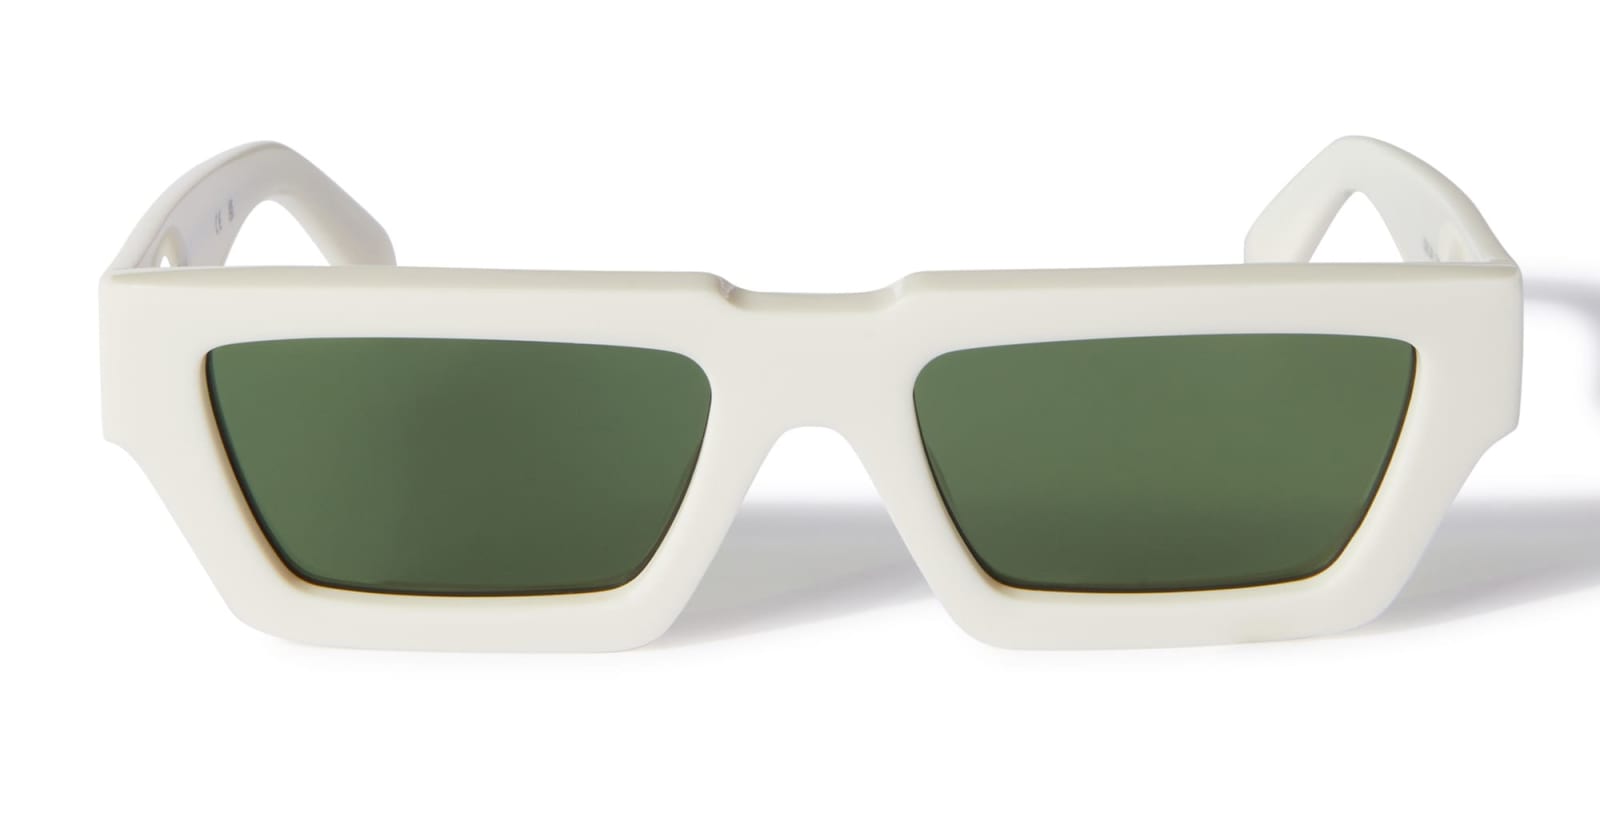 Off-White Manchester - White / Green Sunglasses